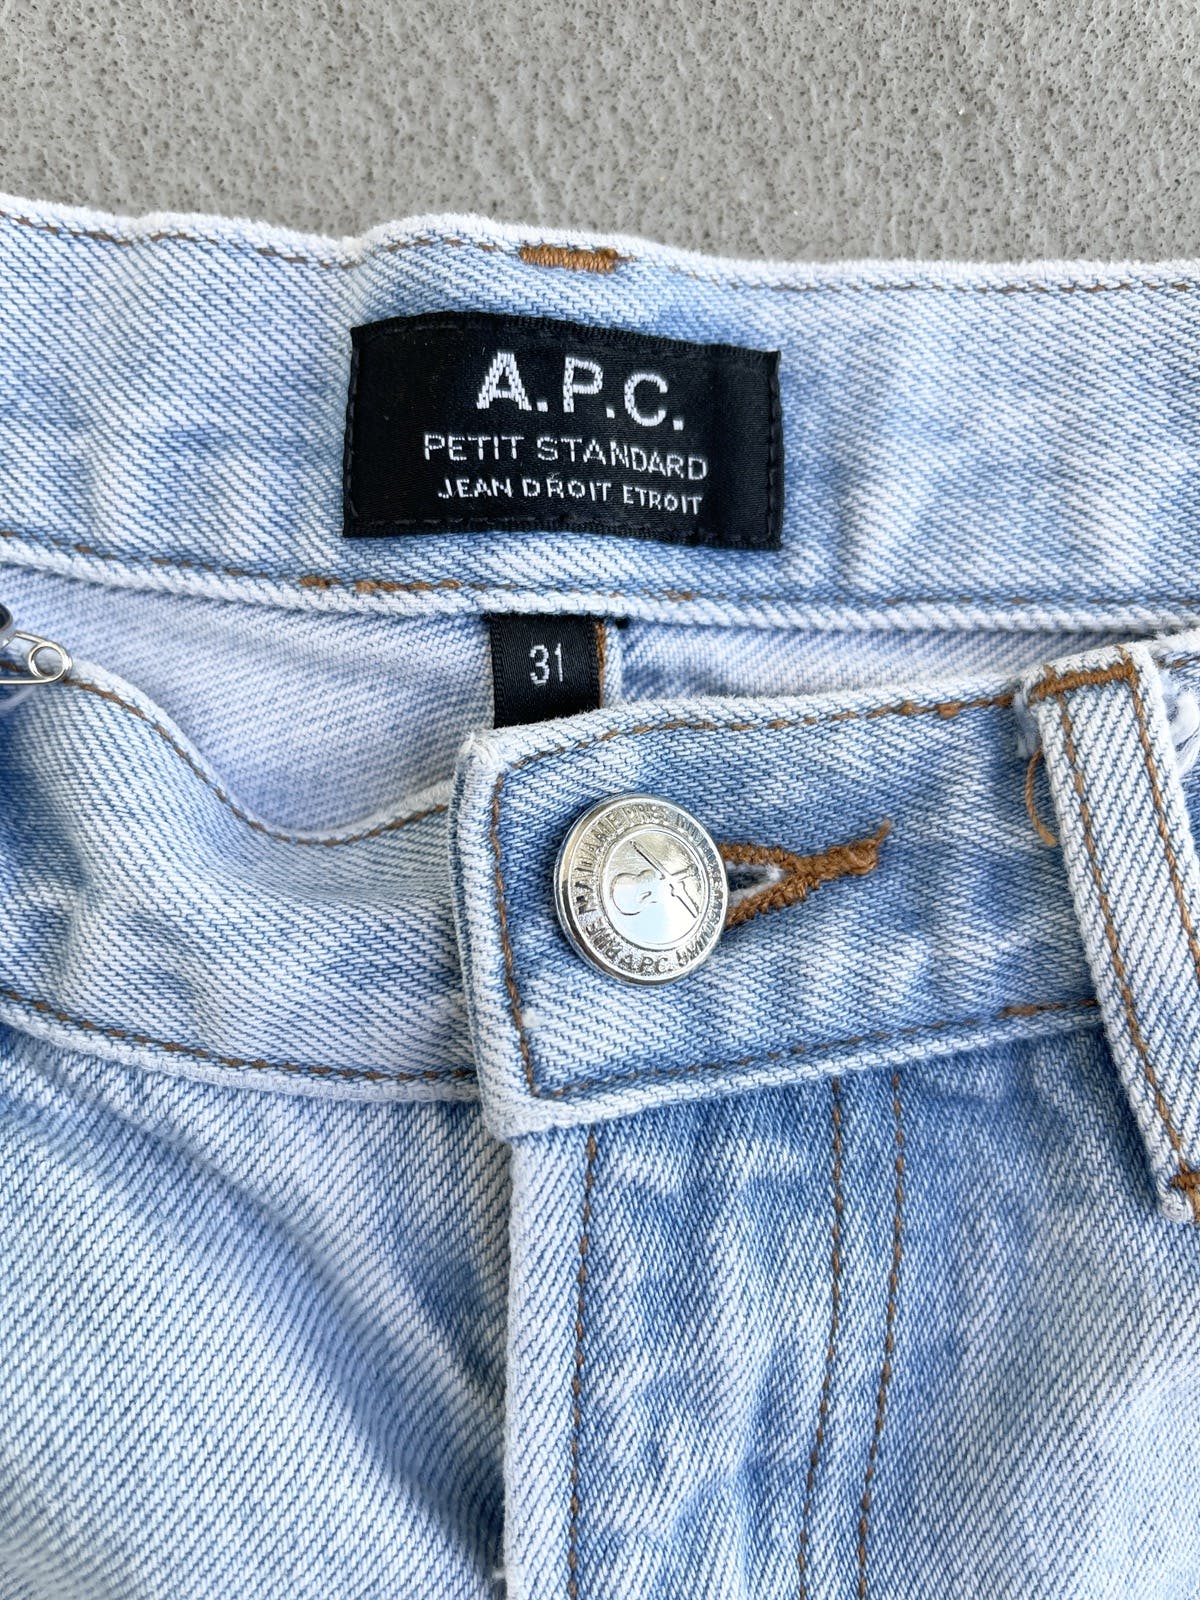 A.P.C. x Jjjjound Petit Standard Flare Denim Jeans - 6